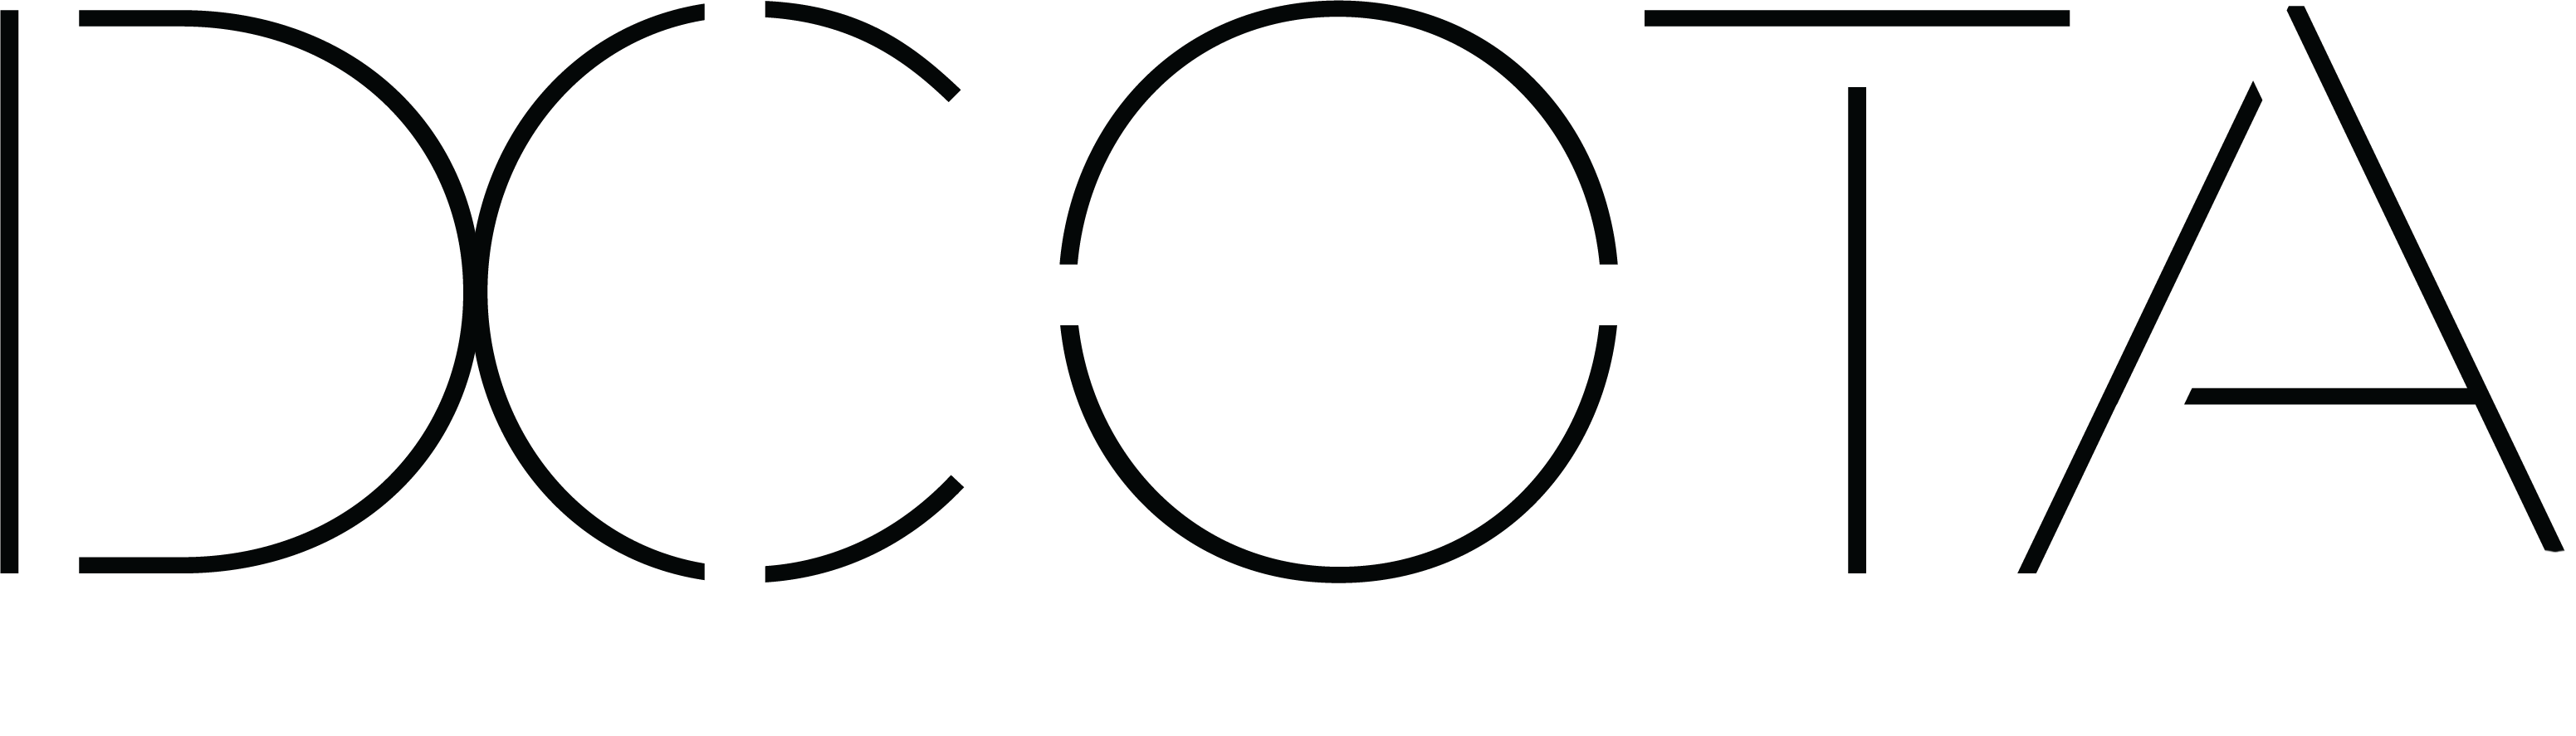 DCOTA Logo